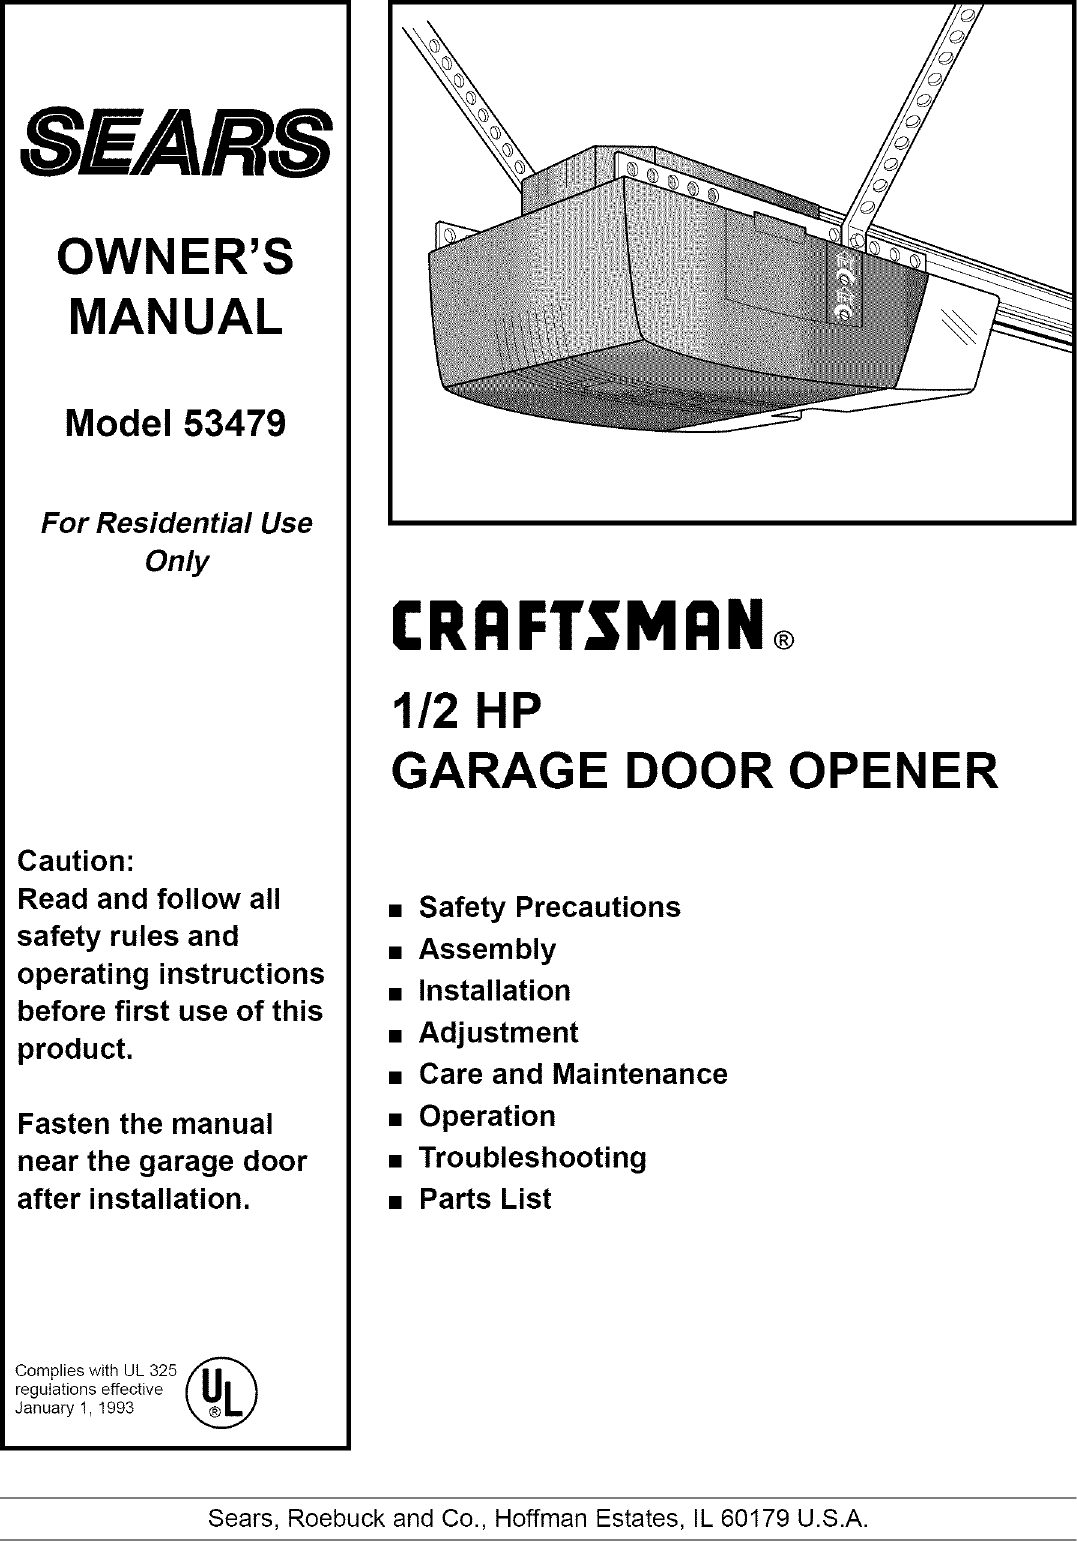 Craftsman Garage Door Opener Manual